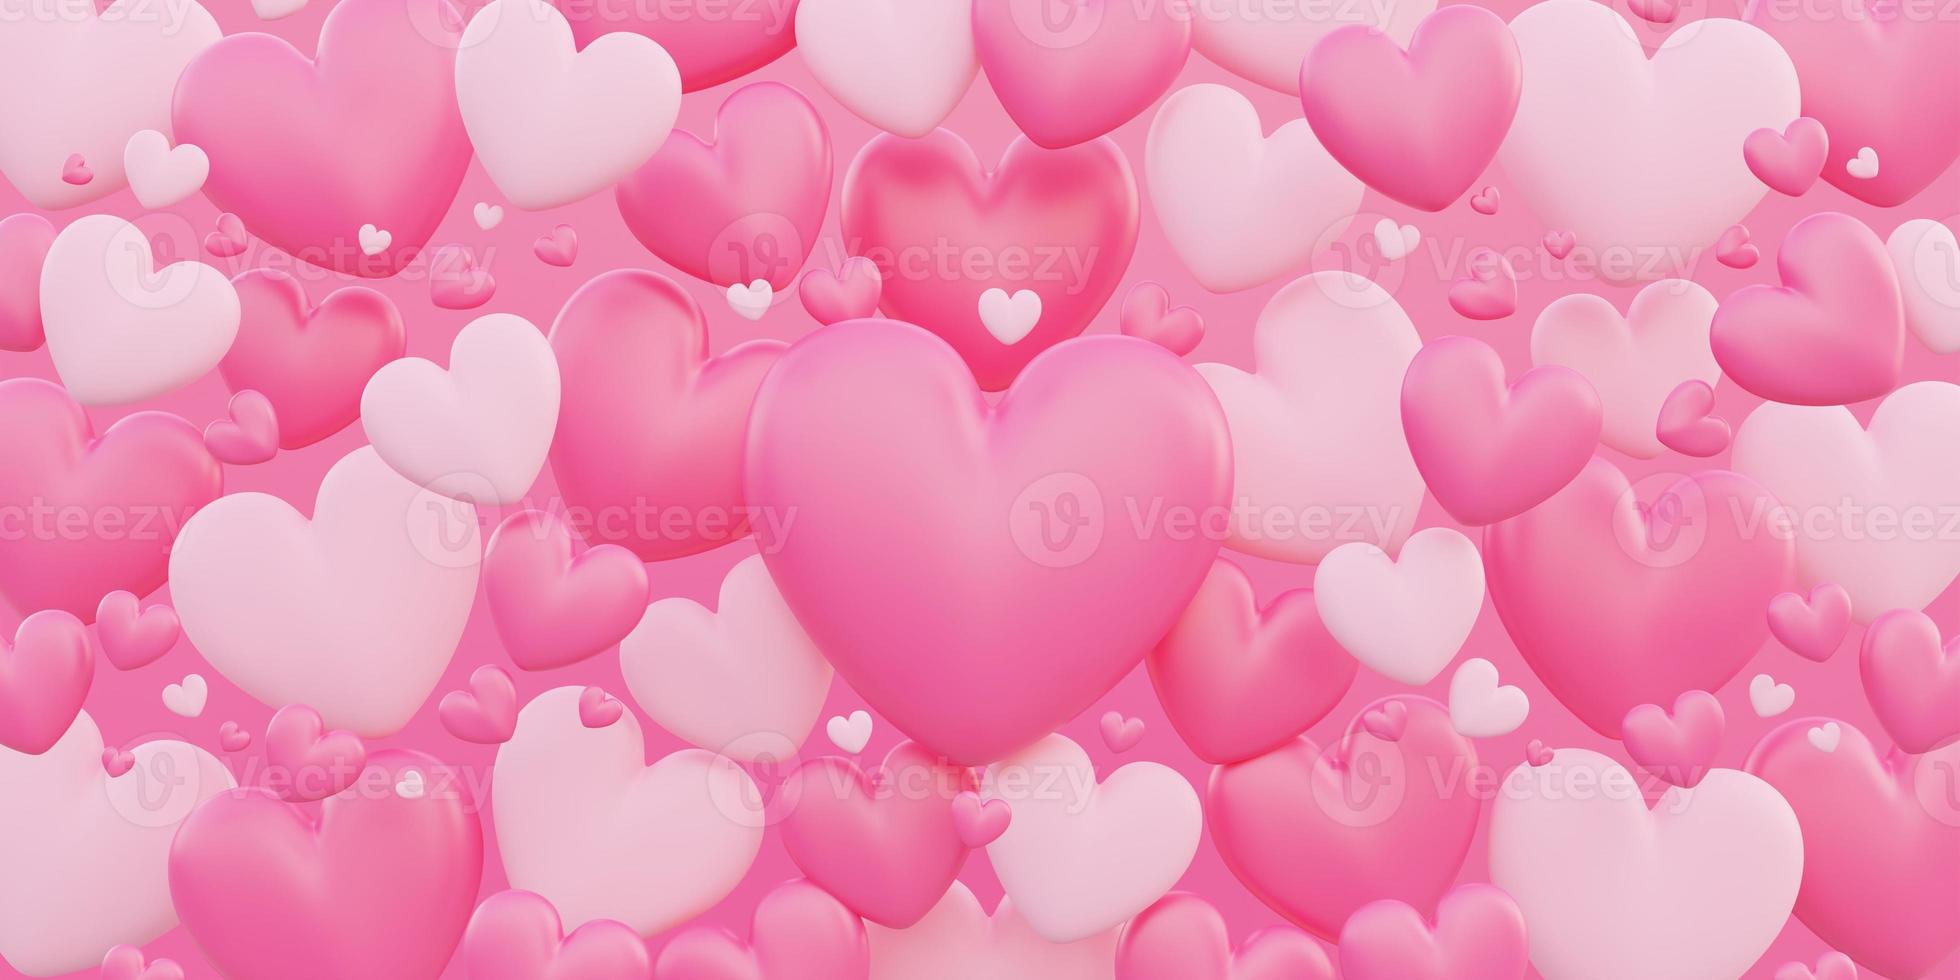 Alla hjärtans dag, kärlekskoncept, 3d-hjärtaform överlappar bakgrund foto